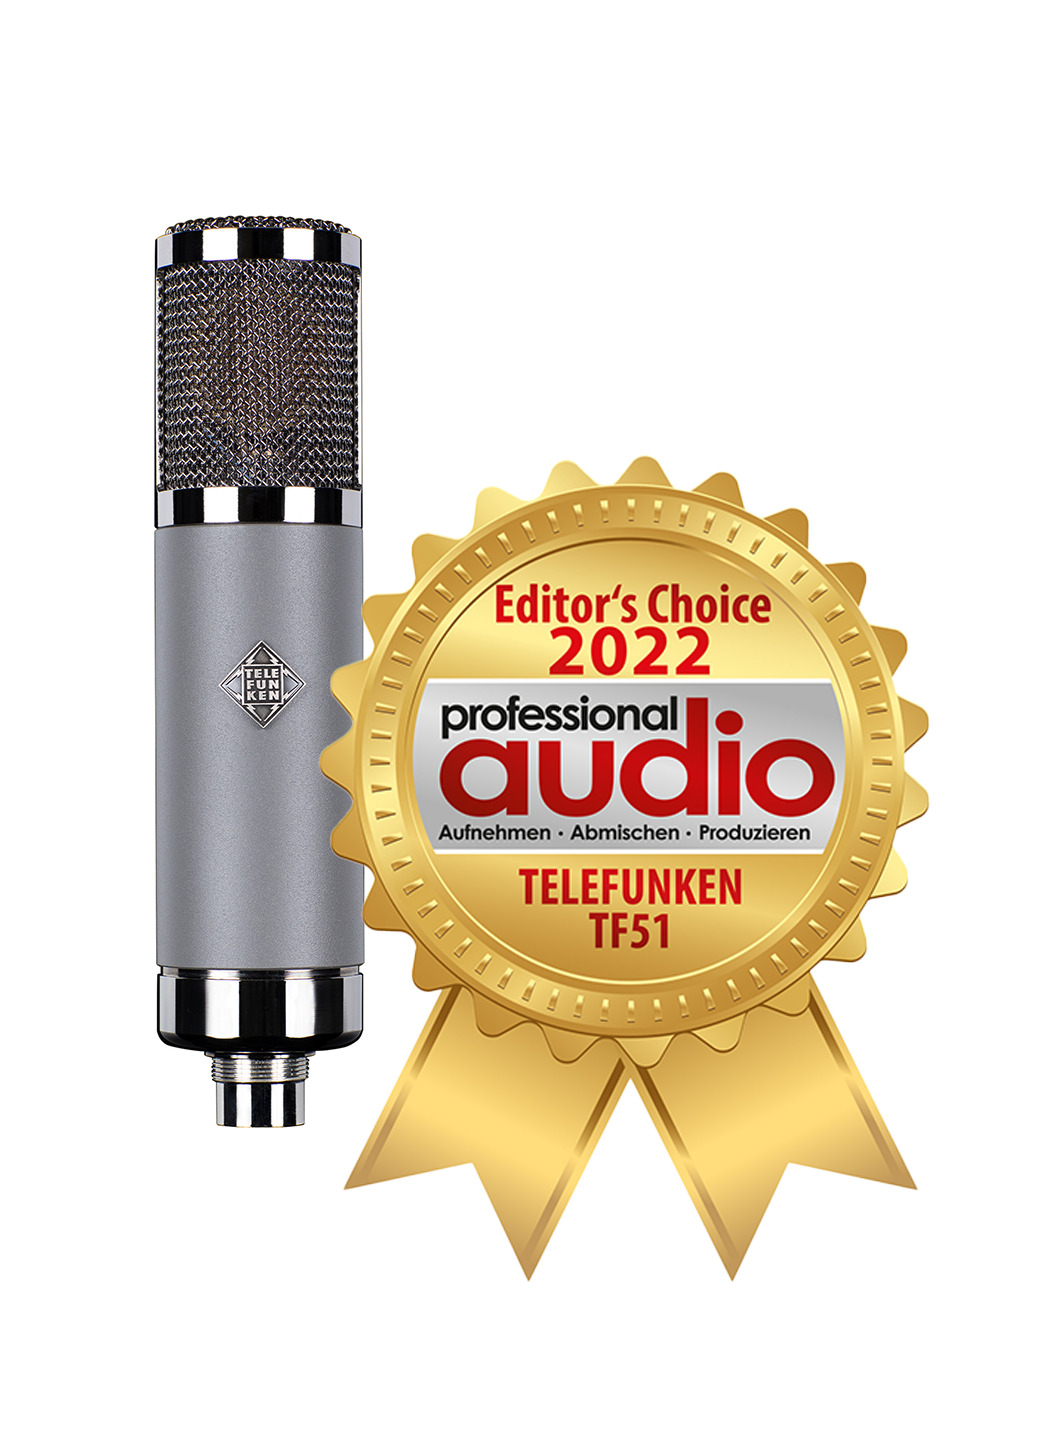 Editor’s Choice Award für das Telefunken TF51